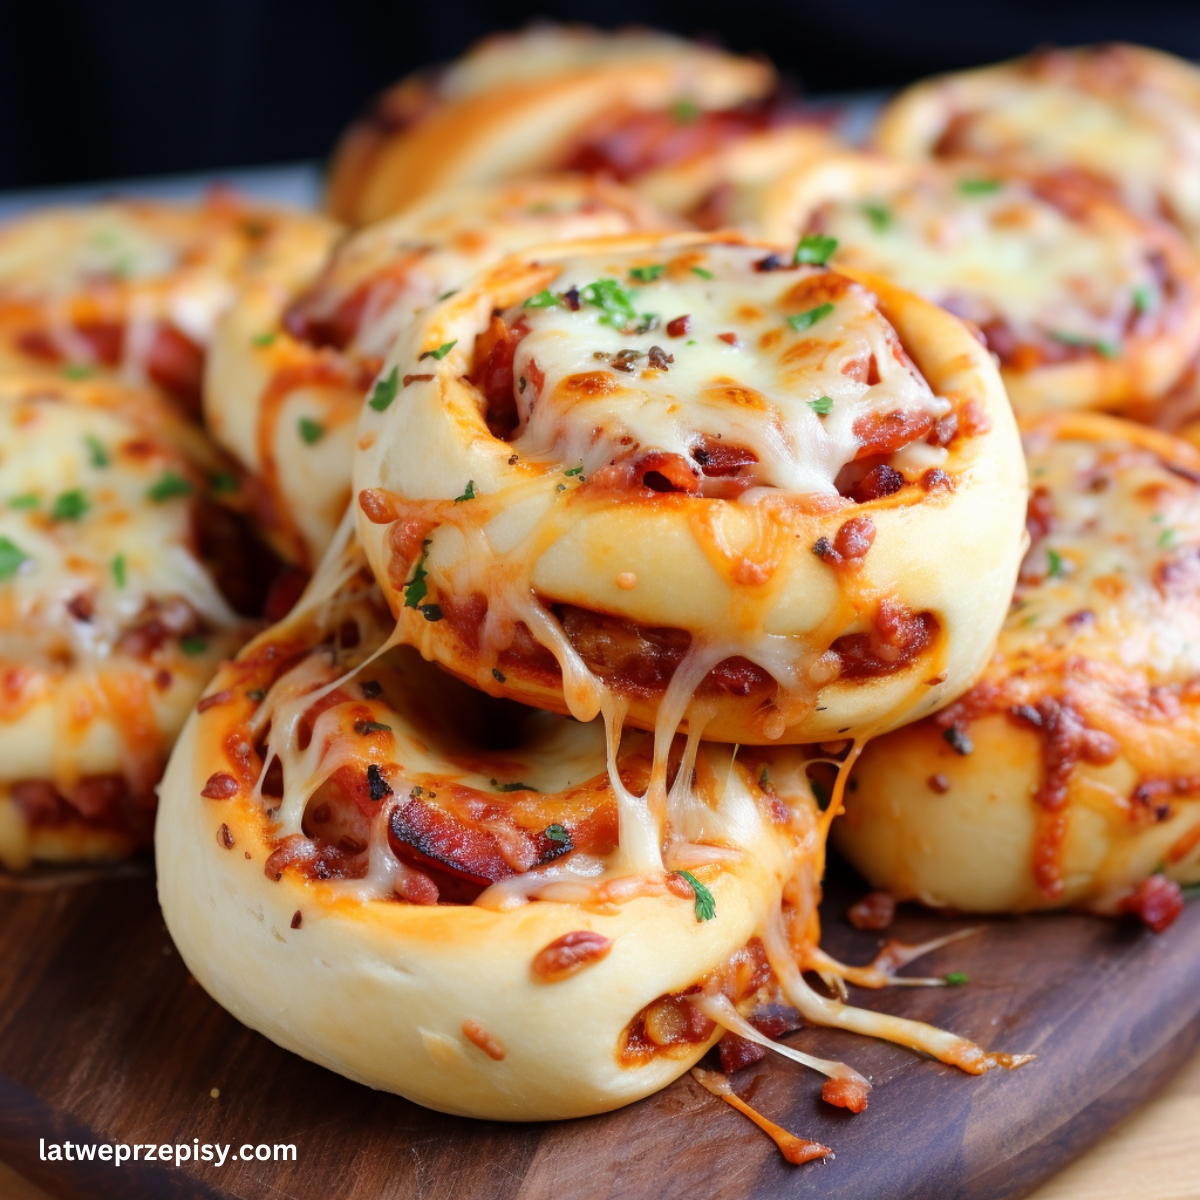 Bułeczki pizzowe Z pepperoni i mozzarellą, podane na drewnianej desce.